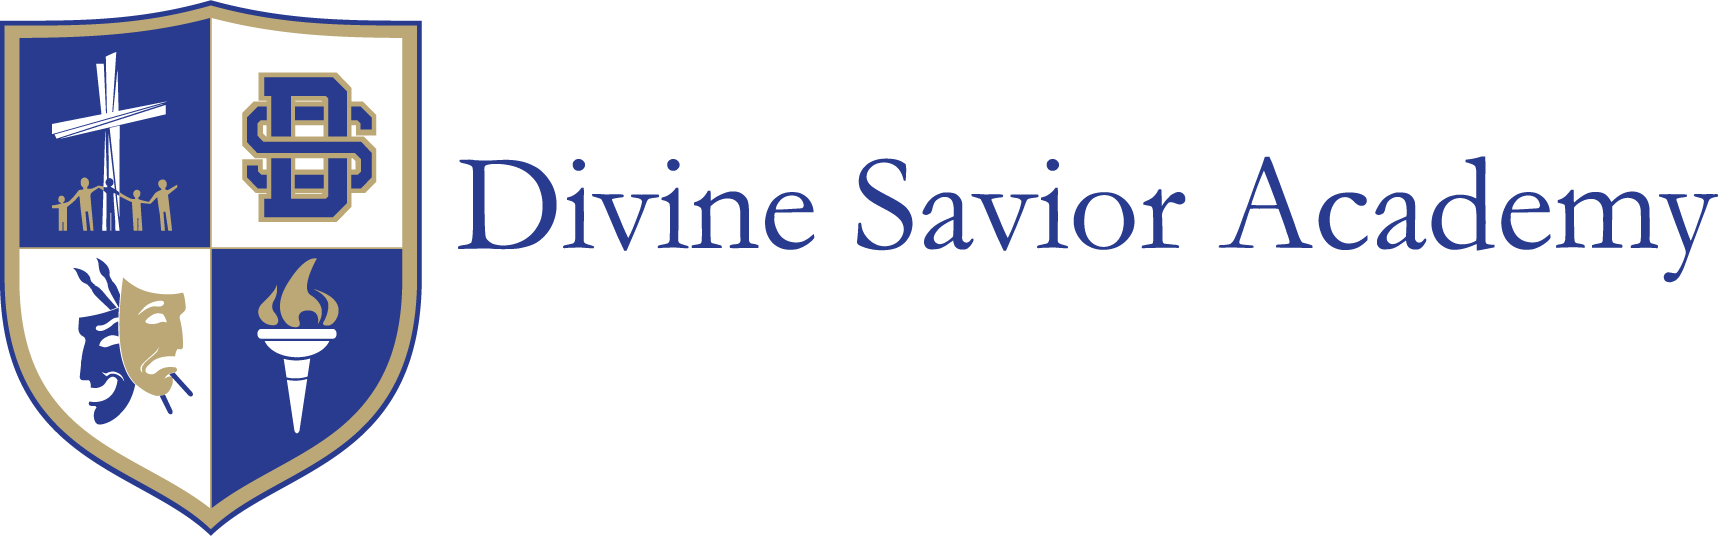 Divine Savior Academy - mobile logo